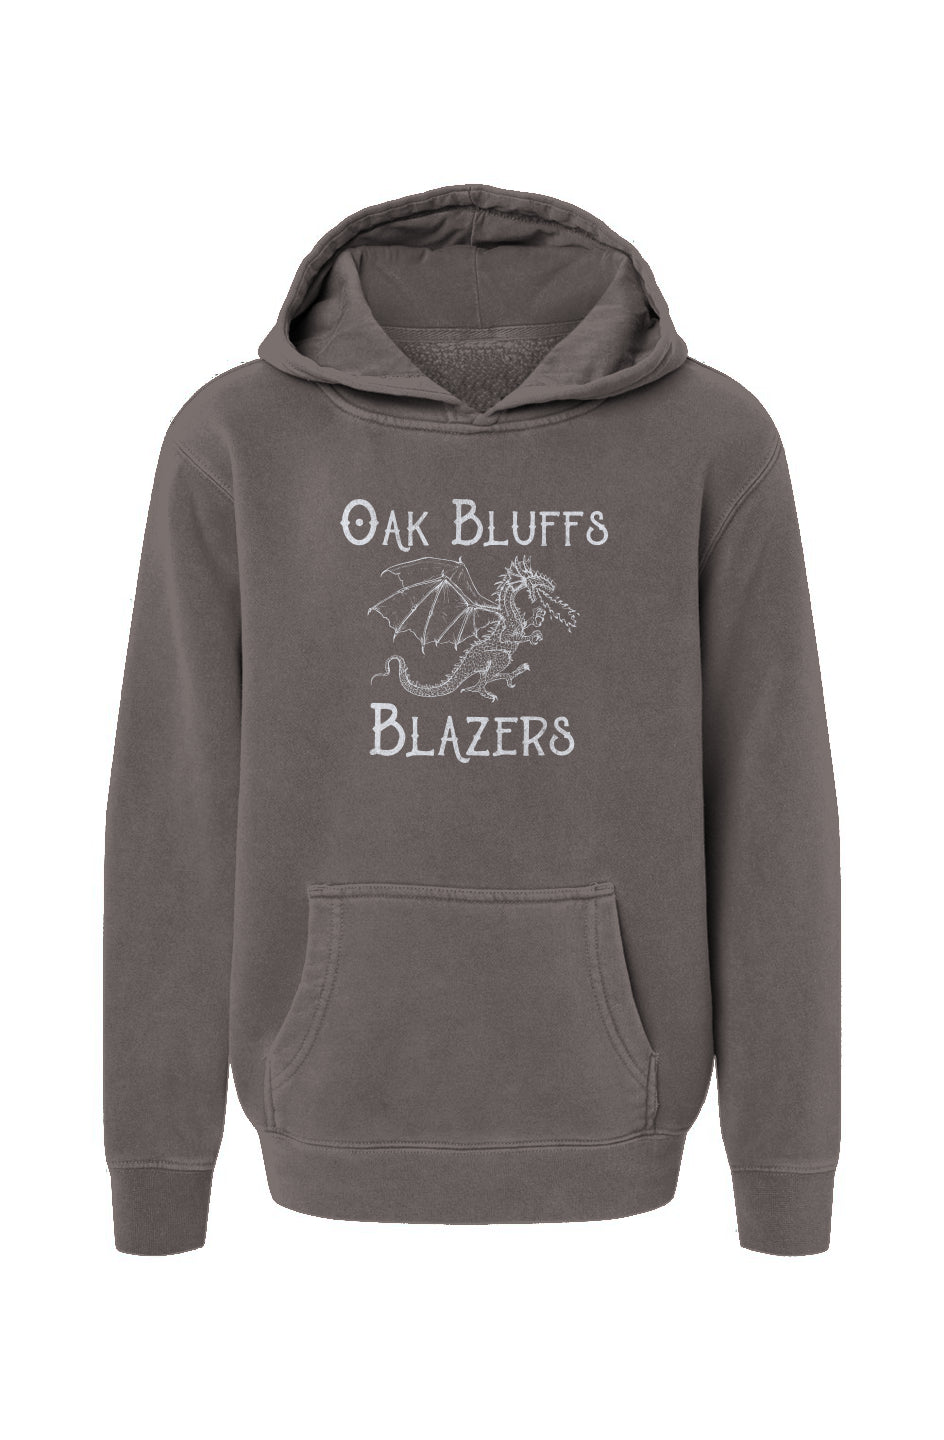 Oak Bluffs Blazers Youth Hoodie